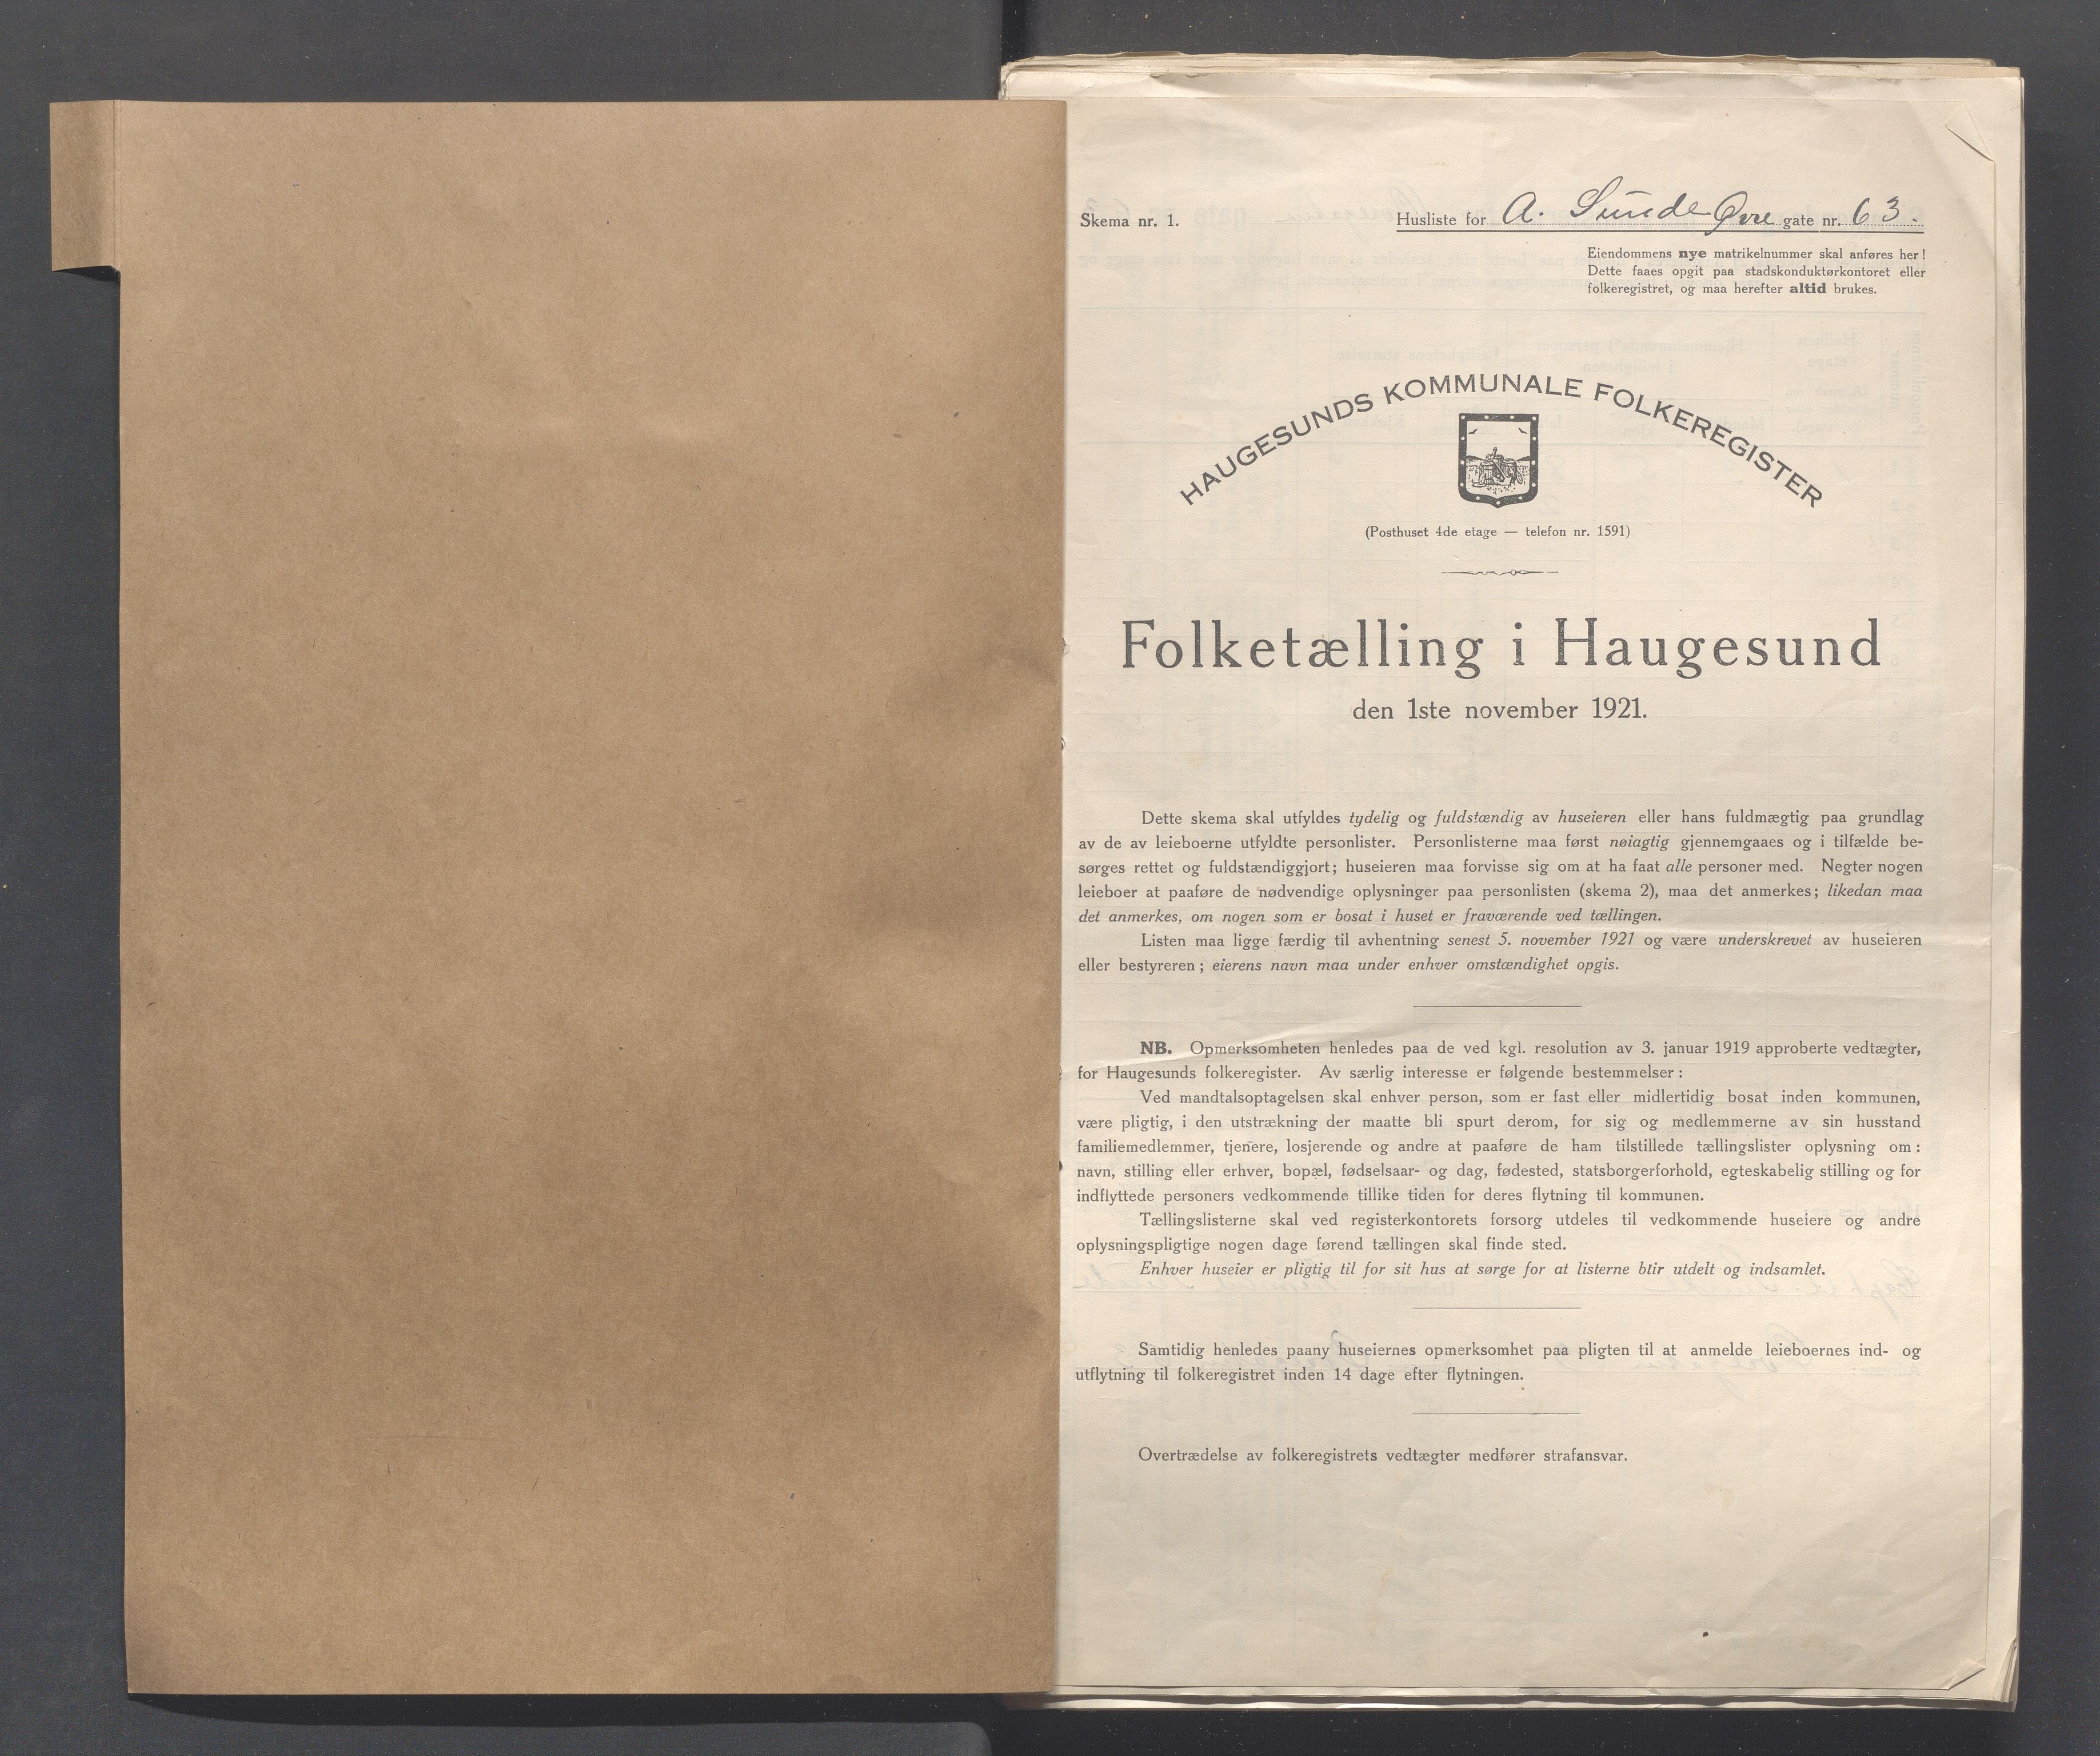 IKAR, Local census 1.11.1921 for Haugesund, 1921, p. 5543